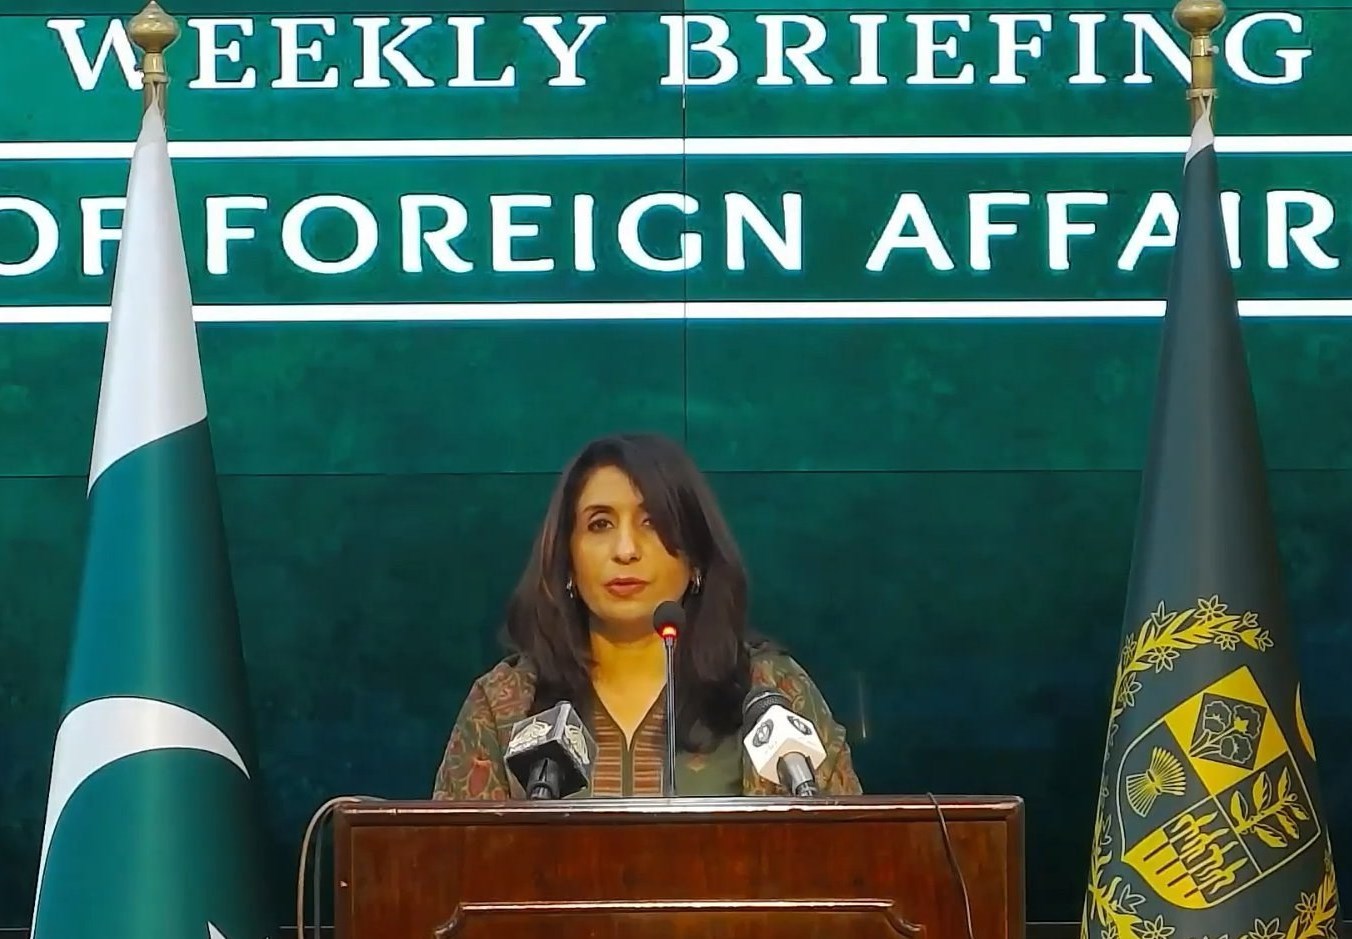 پاسخ پاکستان به آمریکا: به خط لوله صلح متعهد هستیم